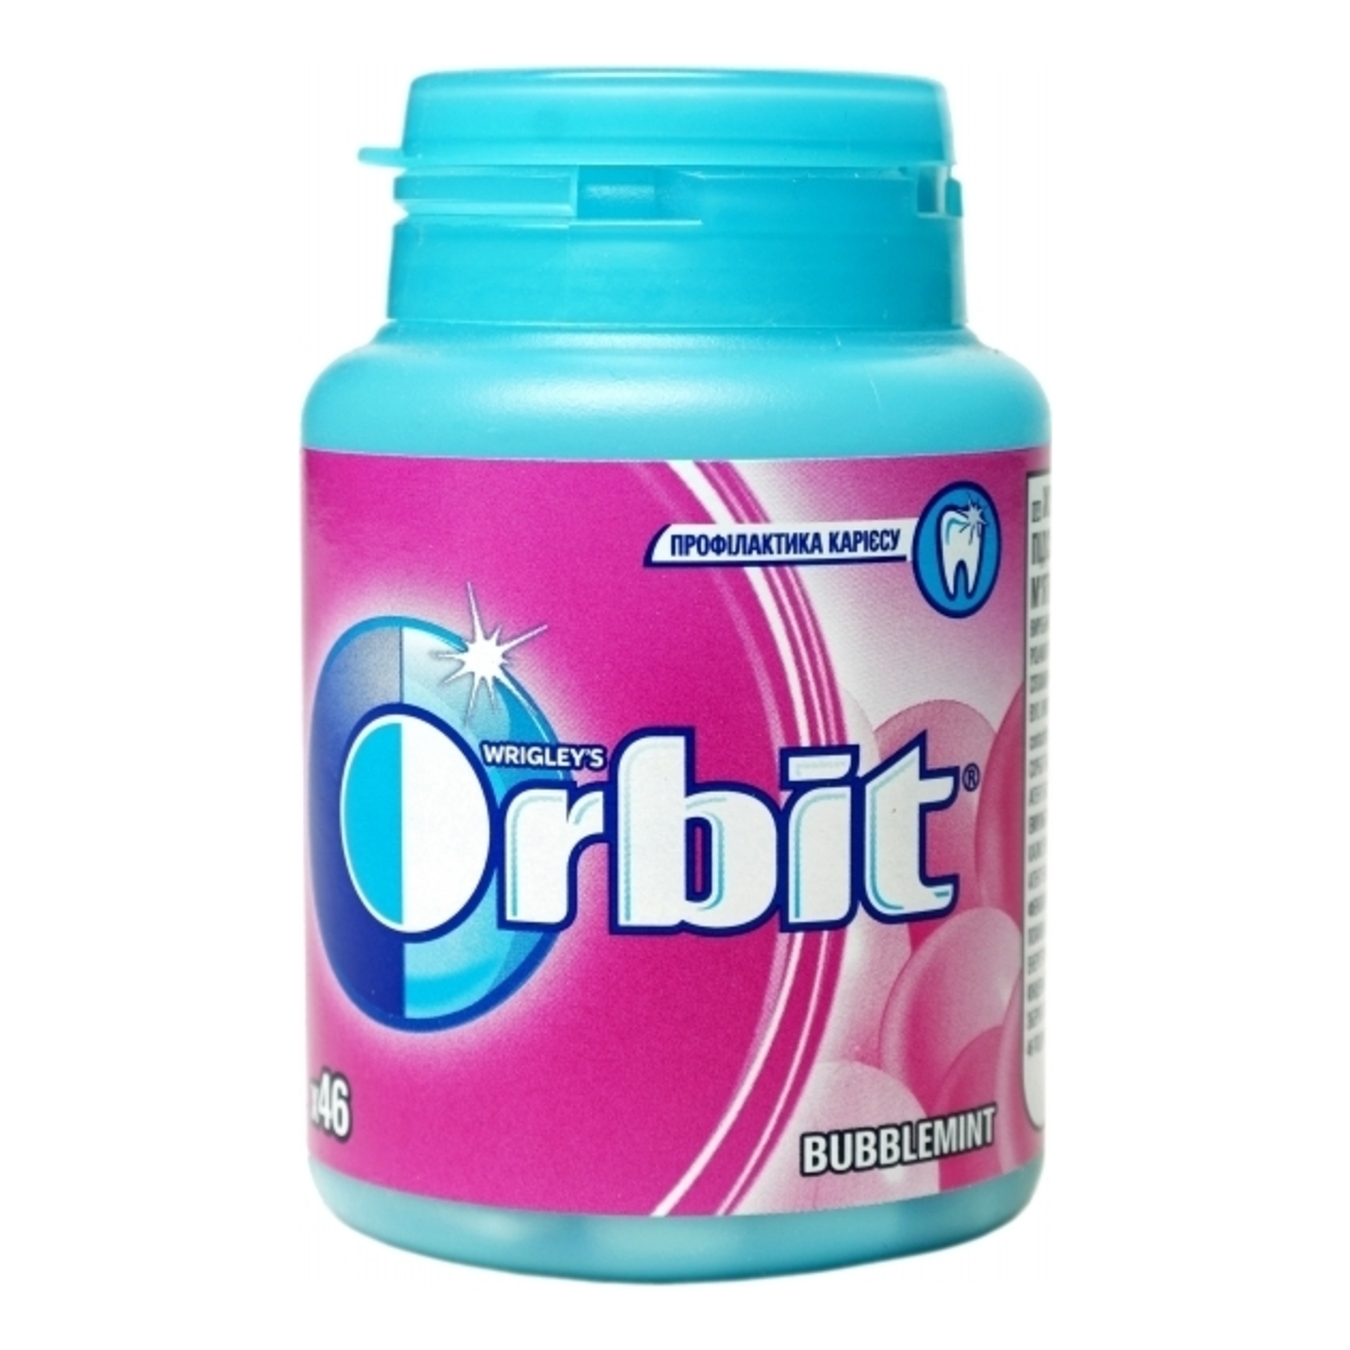 Orbit Bubblemint Chewing Gum 64g